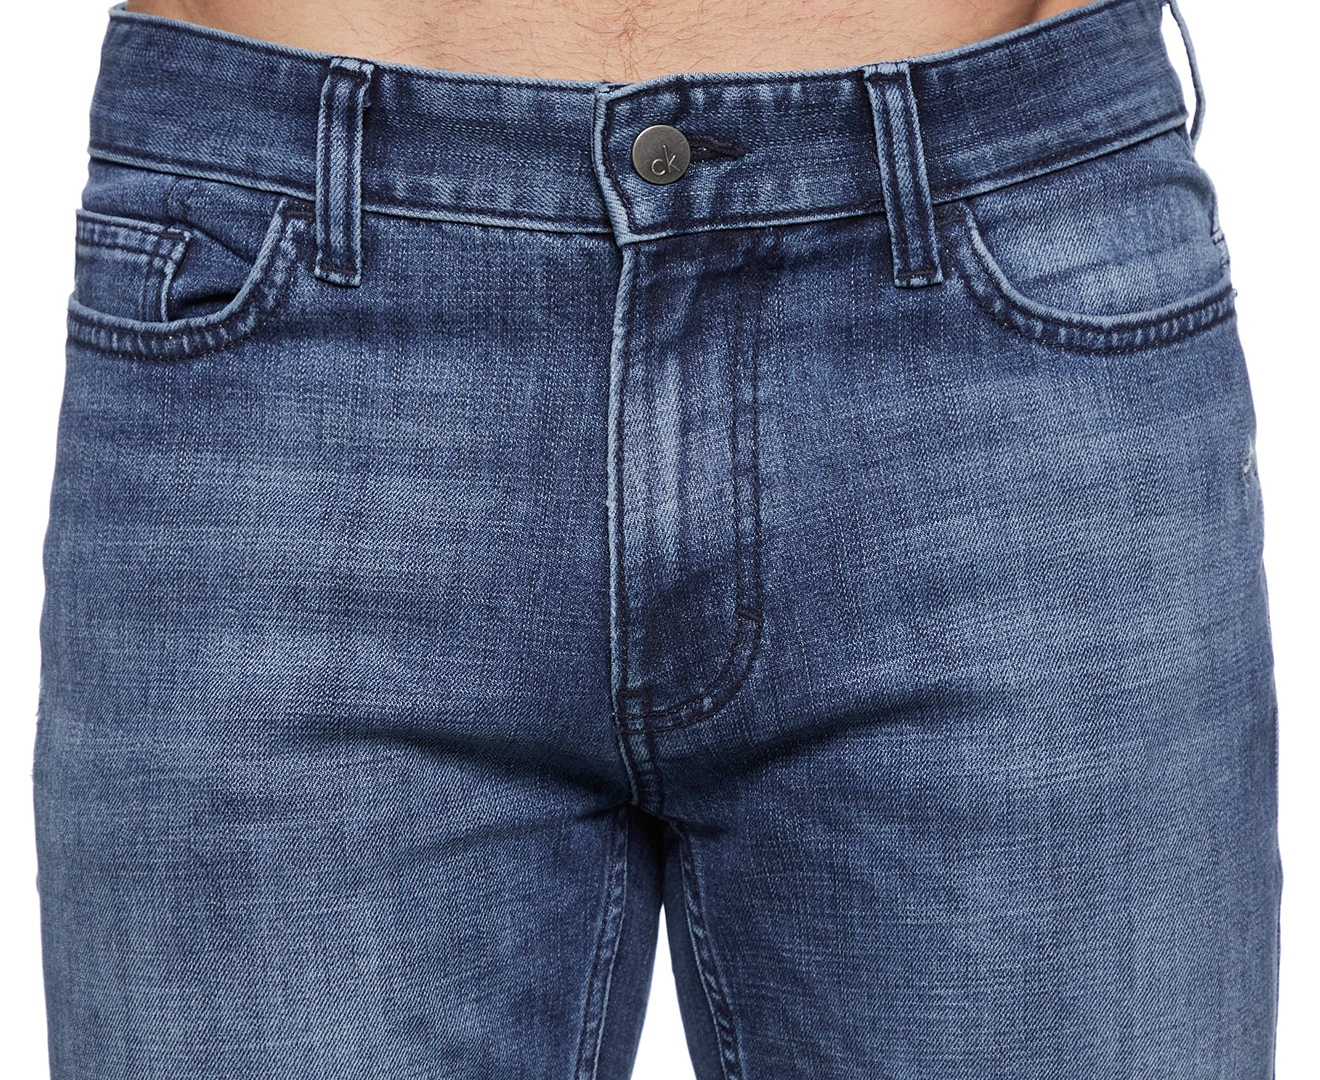 Calvin Klein Jeans Men's Slim Straight Jeans - Deep Blue | Catch.com.au